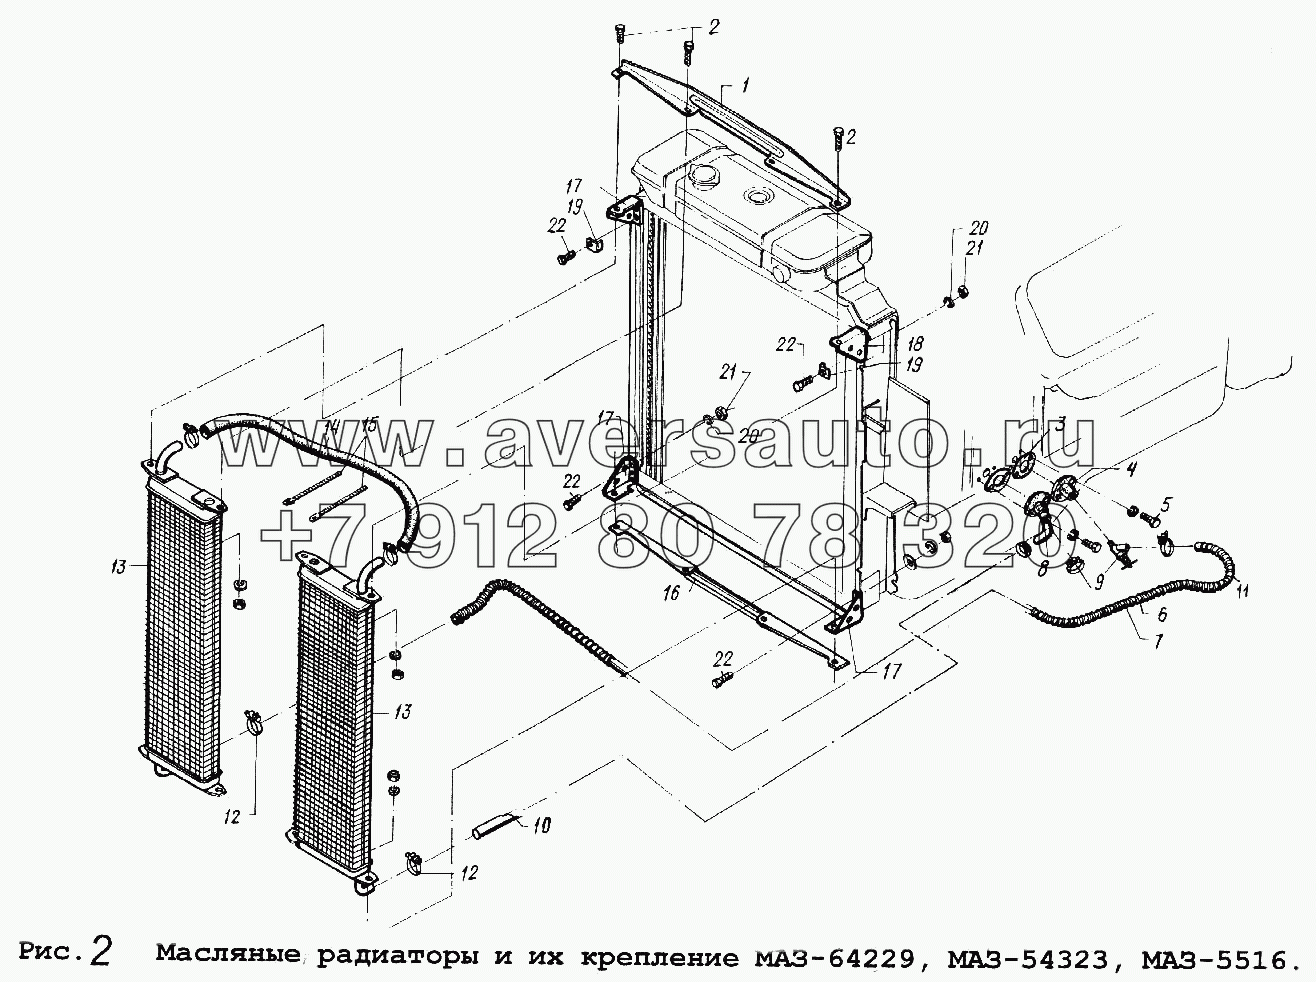 Масляные радиаторы и их крепление МАЗ-64229, МАЗ-54323,МАЗ-5516